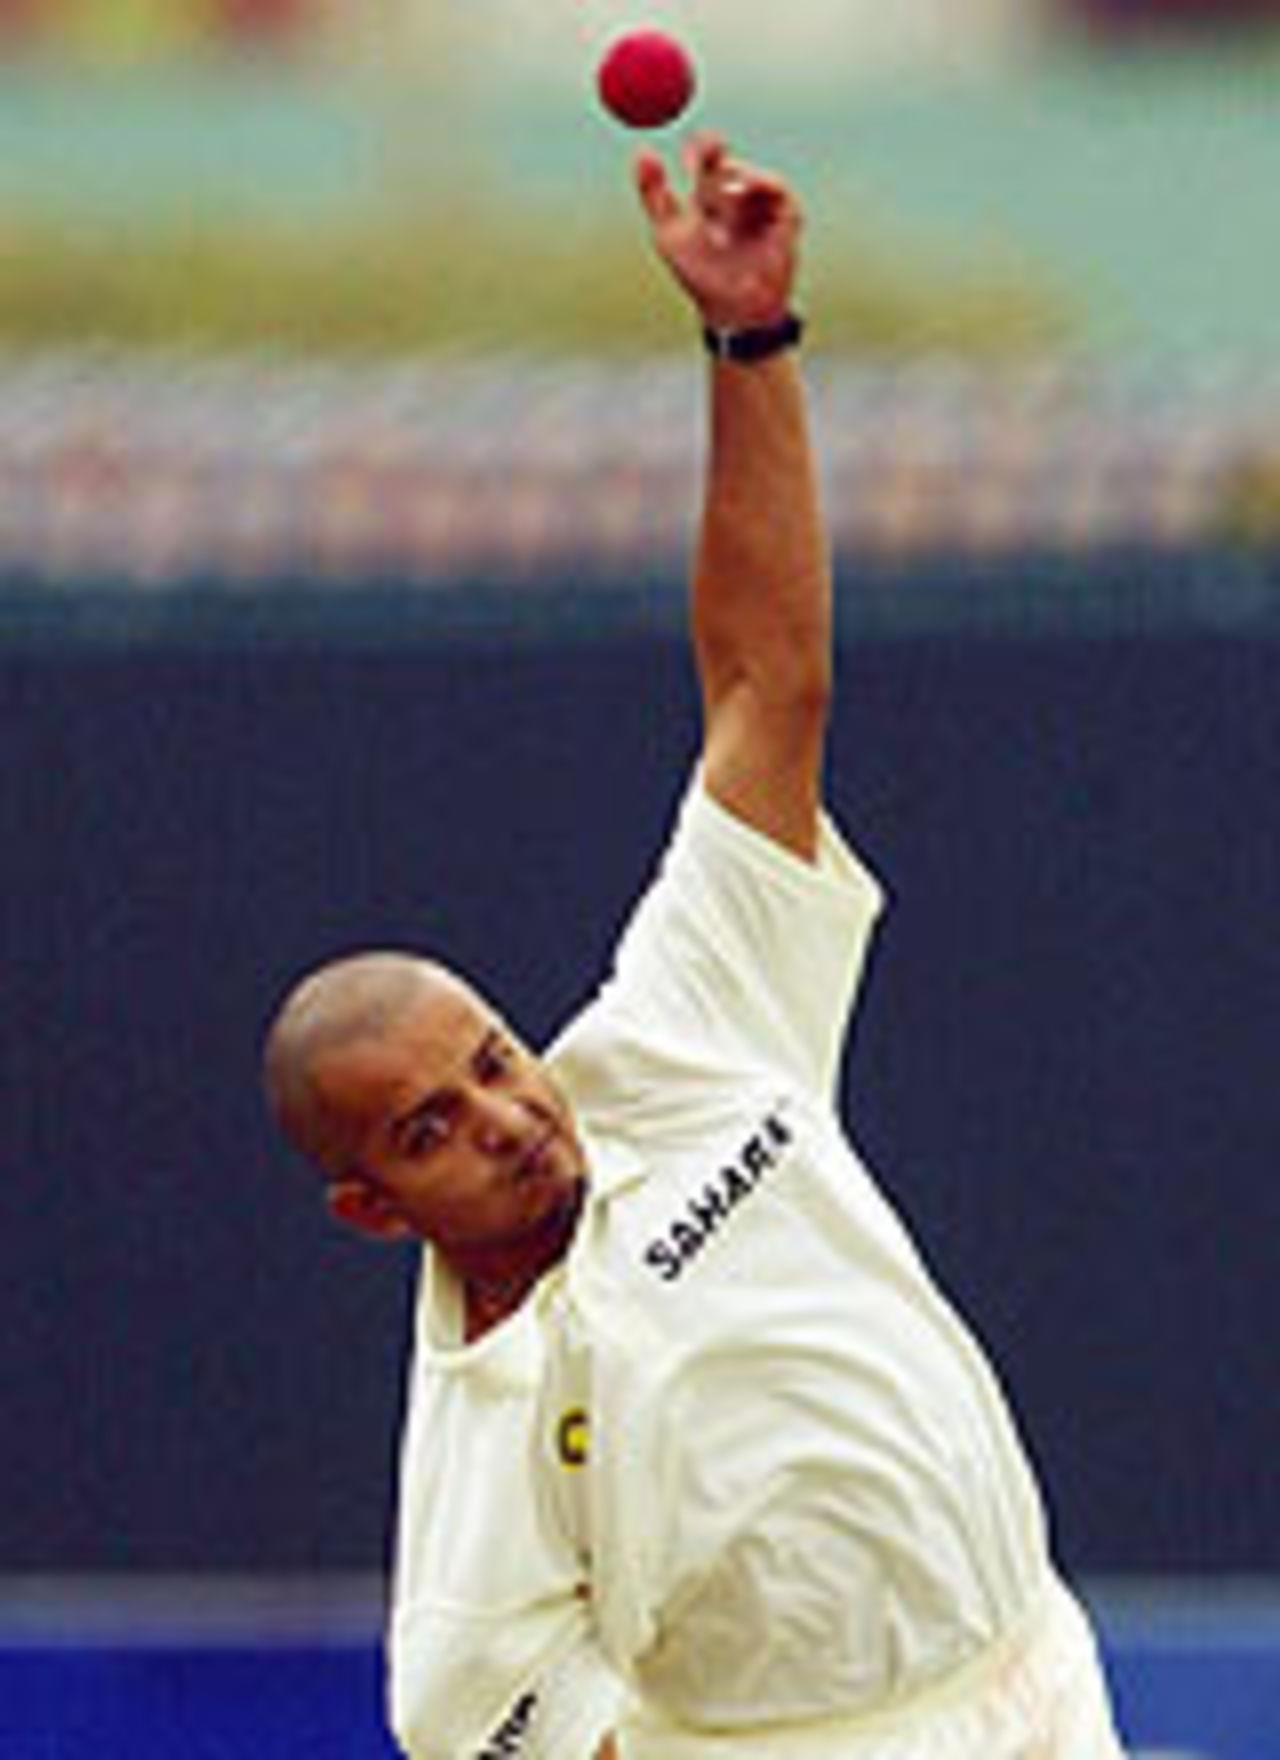 Murali Kartik finally gets a bowl, Australia A v Indians, tour game, Hobart, 1st day, December 19, 2003